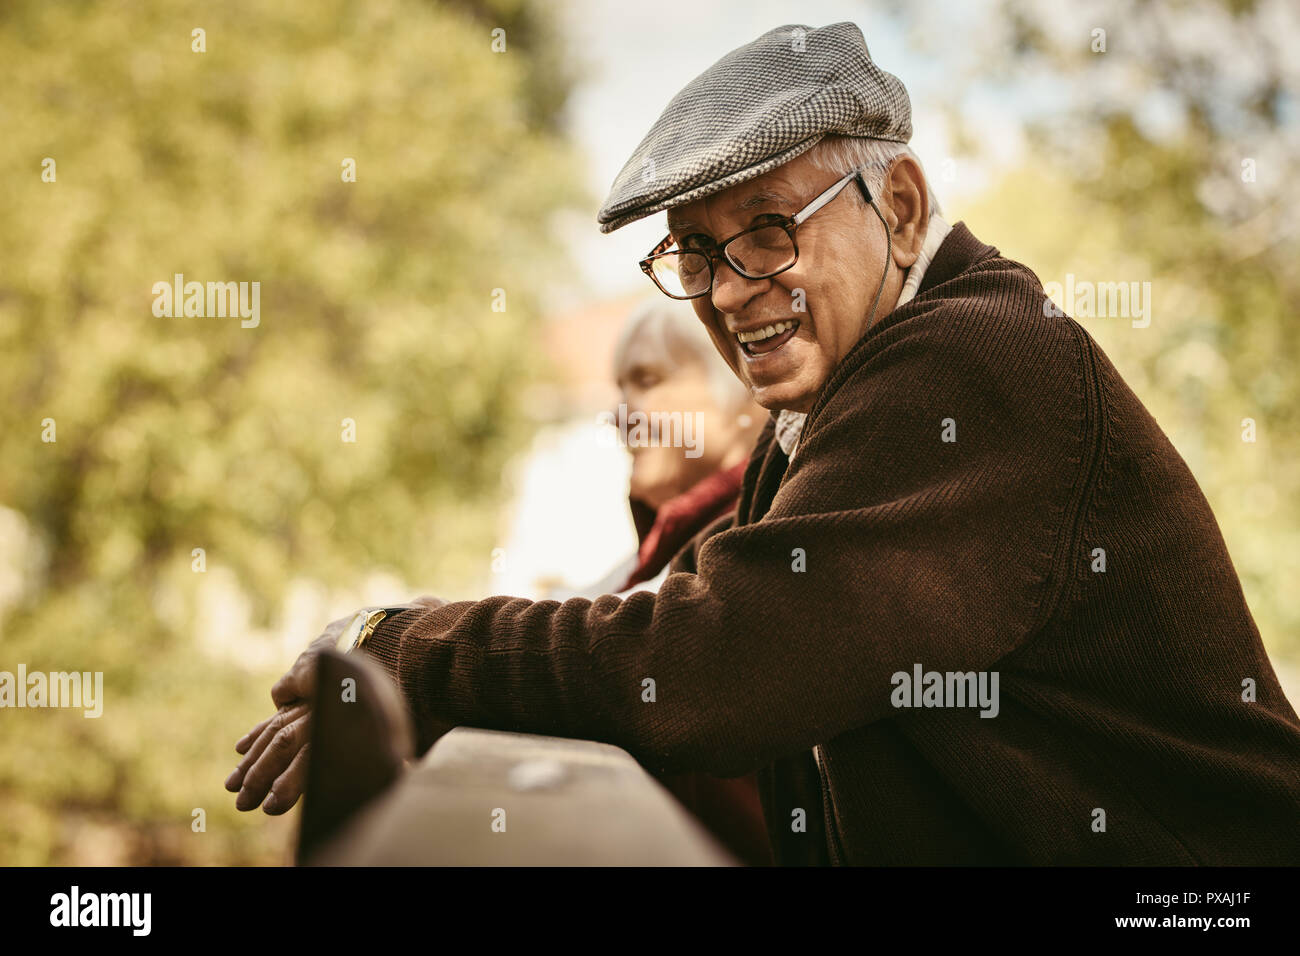 Portrait von Happy älterer Mann mit Brille und Deckel von einem holzgeländer mit einer Frau an der zurück in die PARK-Stellung. Lächelnd alter Mann im Park auf einem Winte Stockfoto